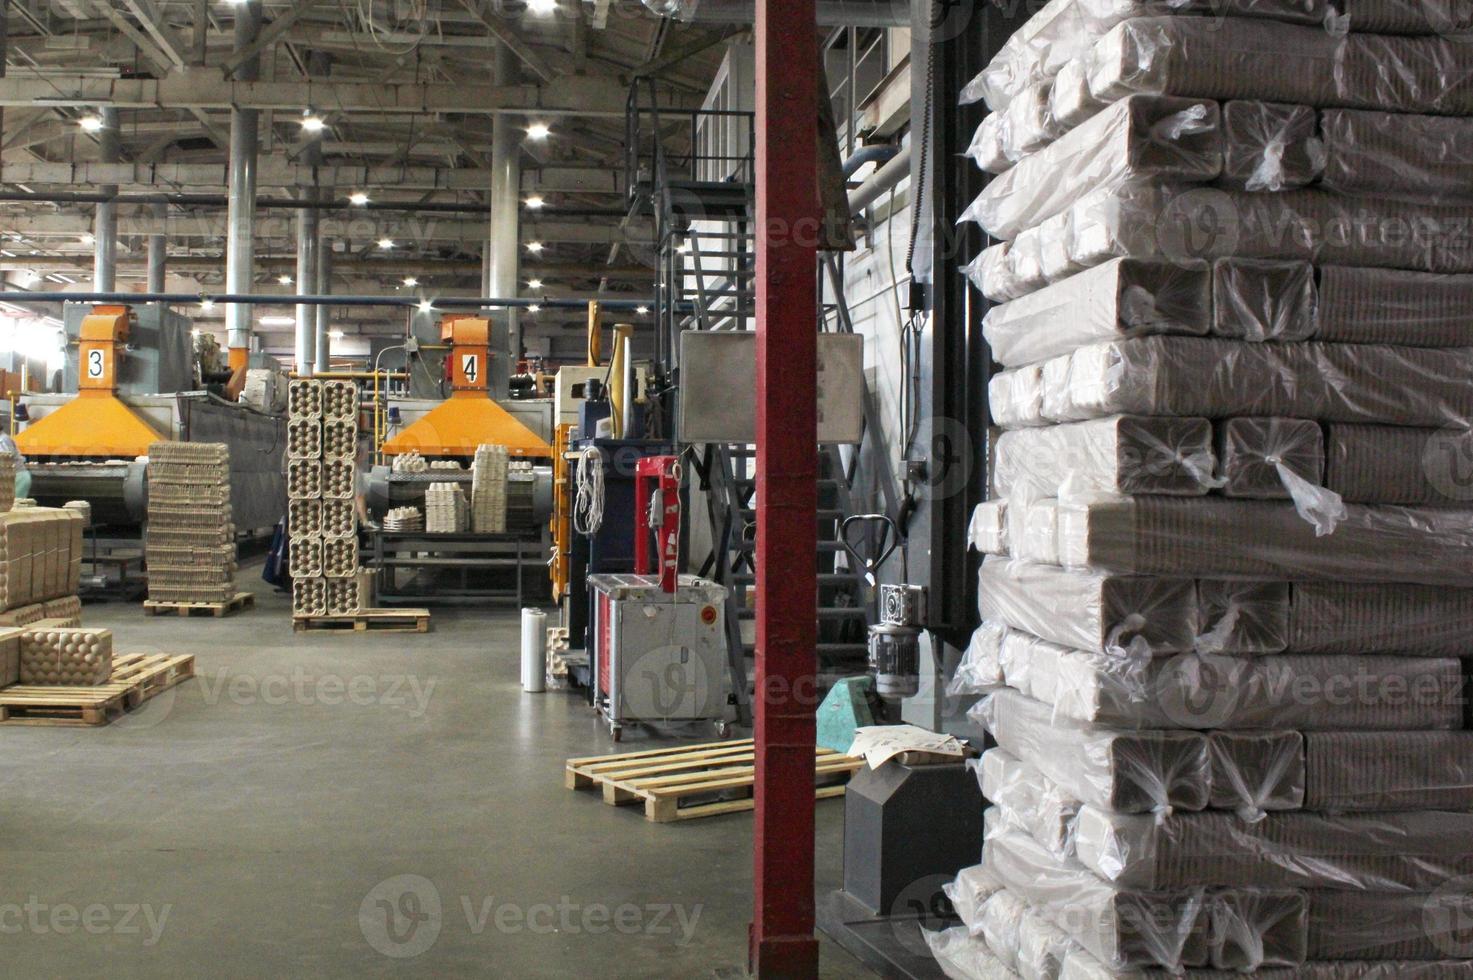 opslagruimte magazijn met verpakt goederen Aan houten pallet Bij recycle papier fabriek. voorbereiding Verzending van producten. logistiek, vervoer en distributie faciliteit voor levering. levering keten lading foto